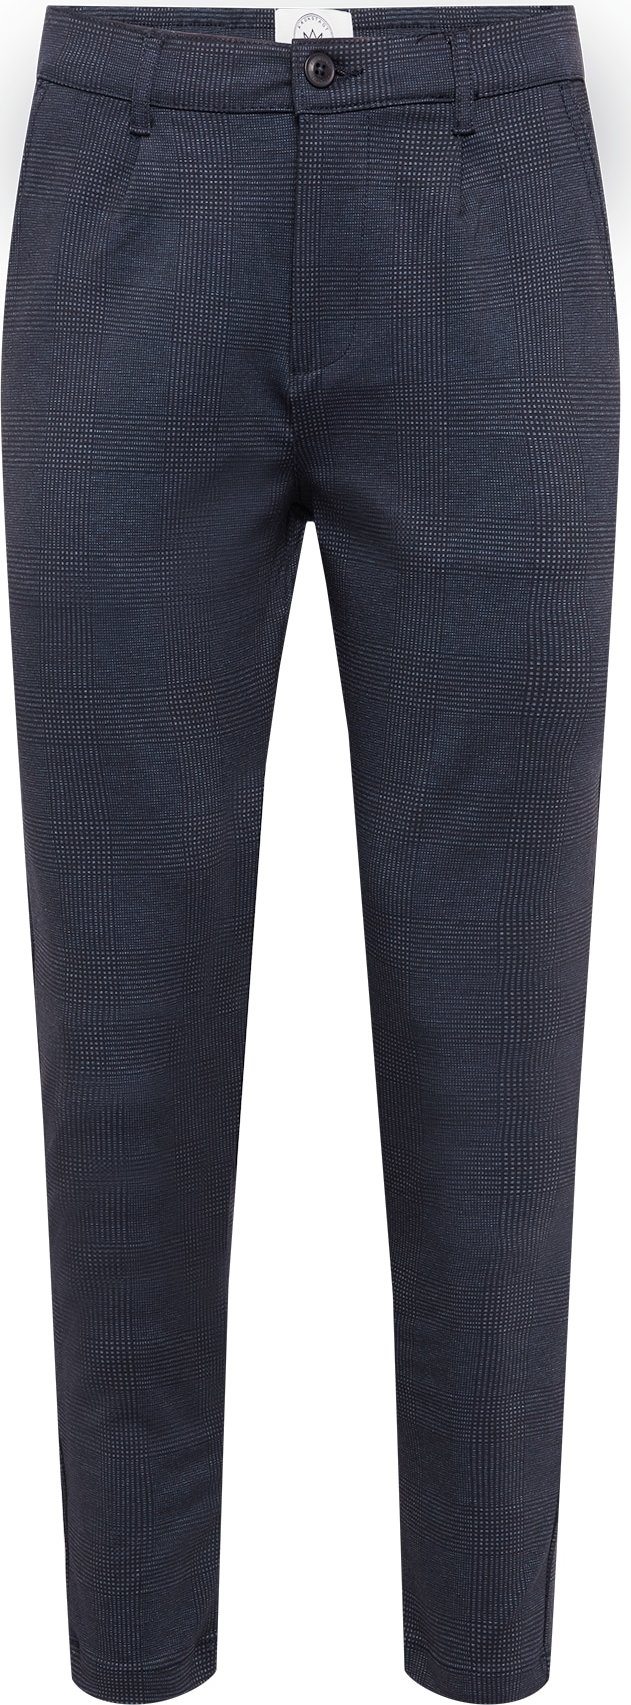 Kalhoty se sklady v pase Kronstadt marine modrá / námořnická modř